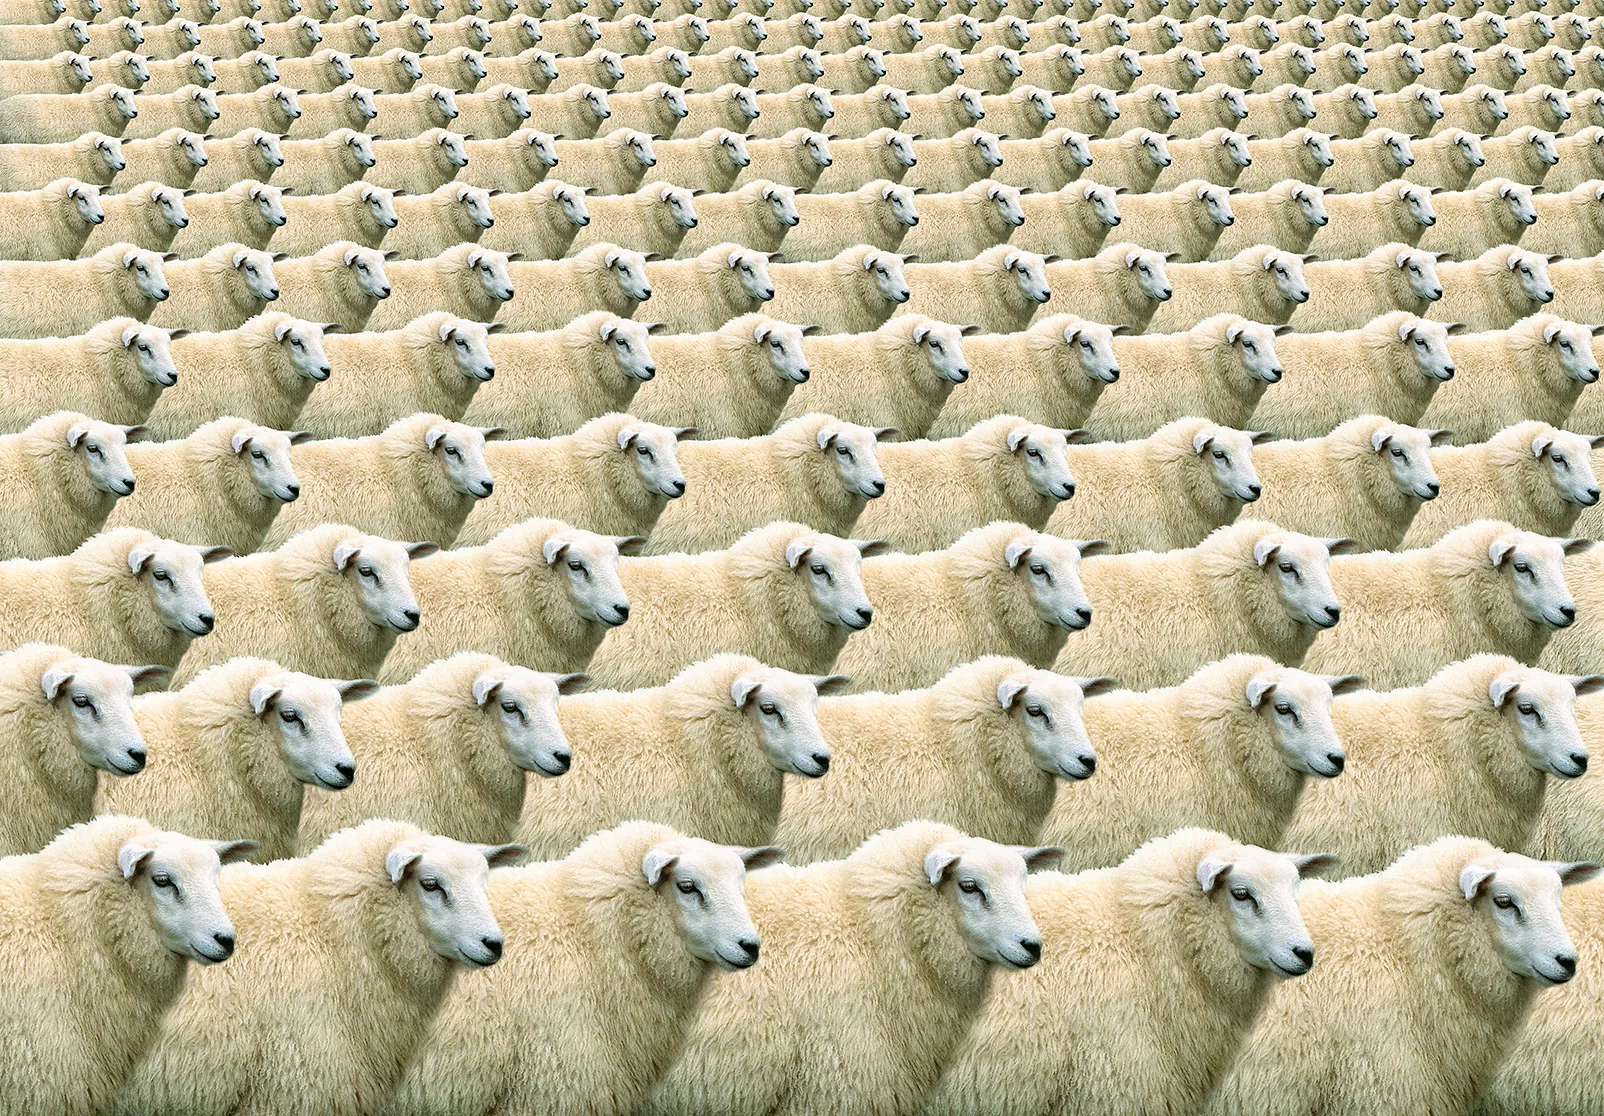 El cas de l’ovella Dolly va encendre el debat sobre els límits ètics de la clonació